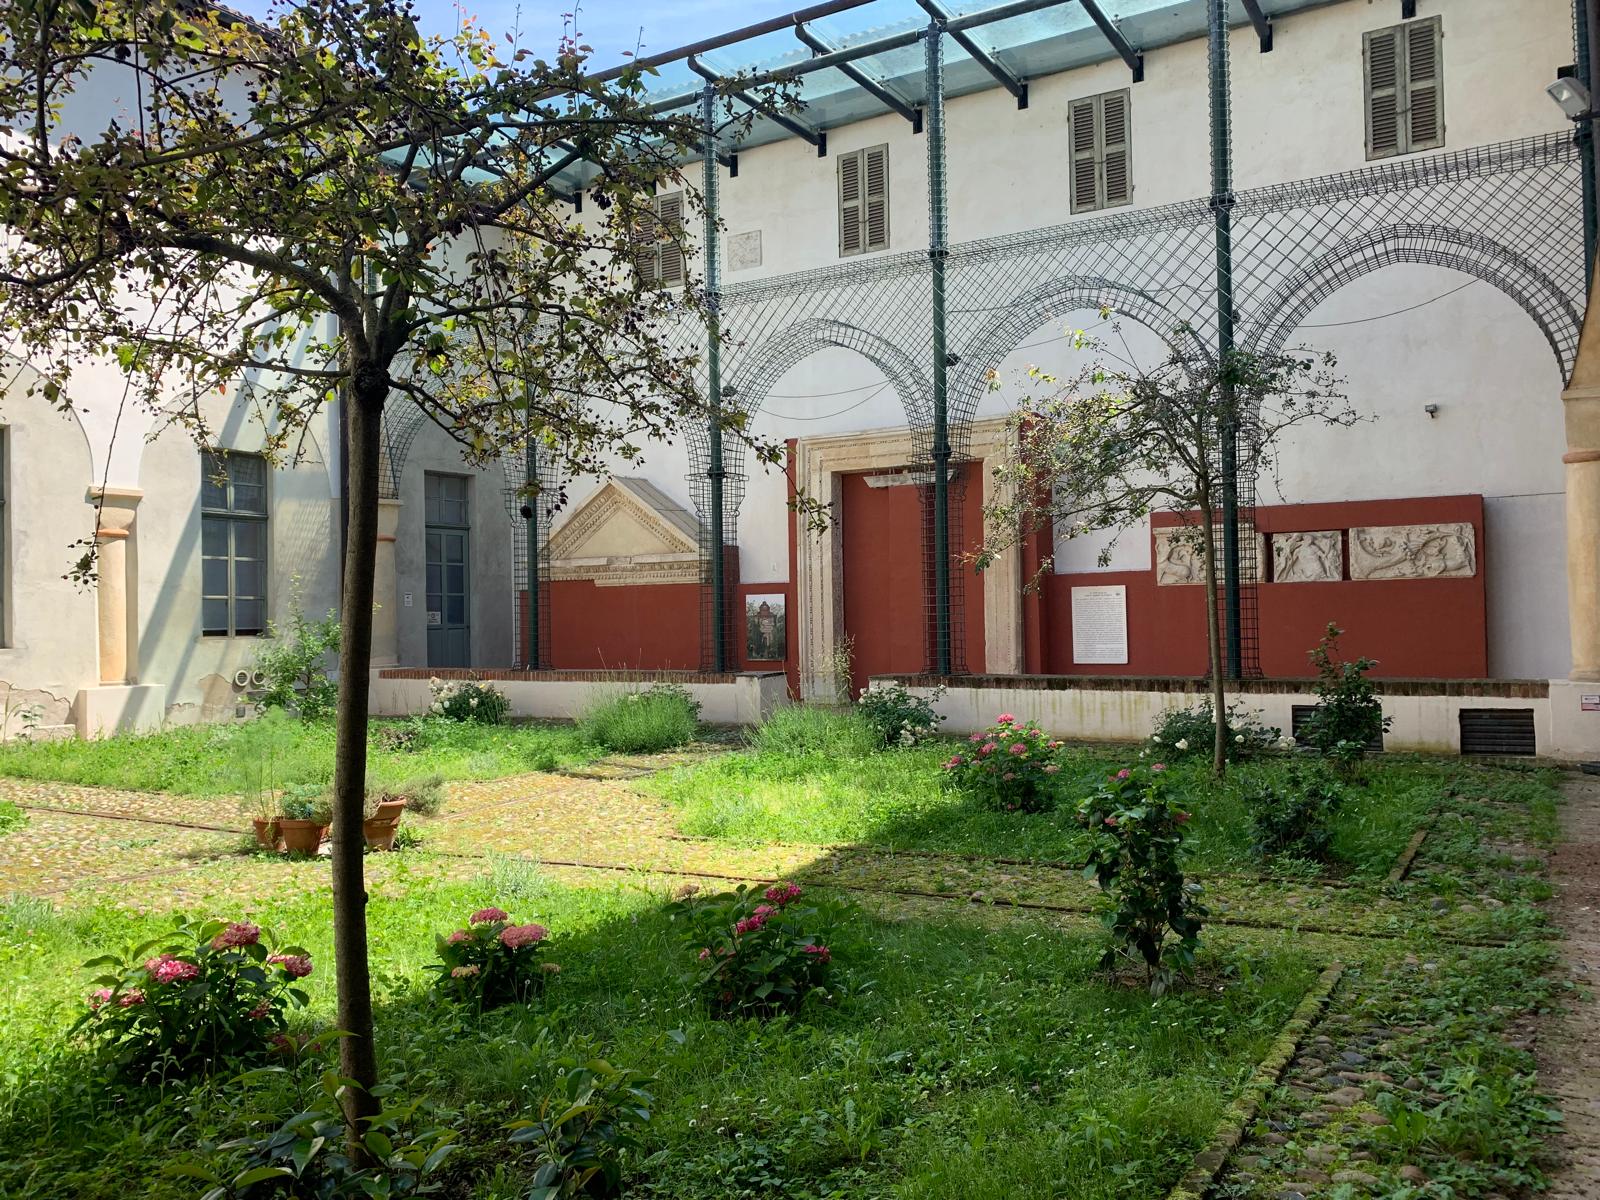 CASALE – Il giardino del convento: da orto dei semplici a spazio museale